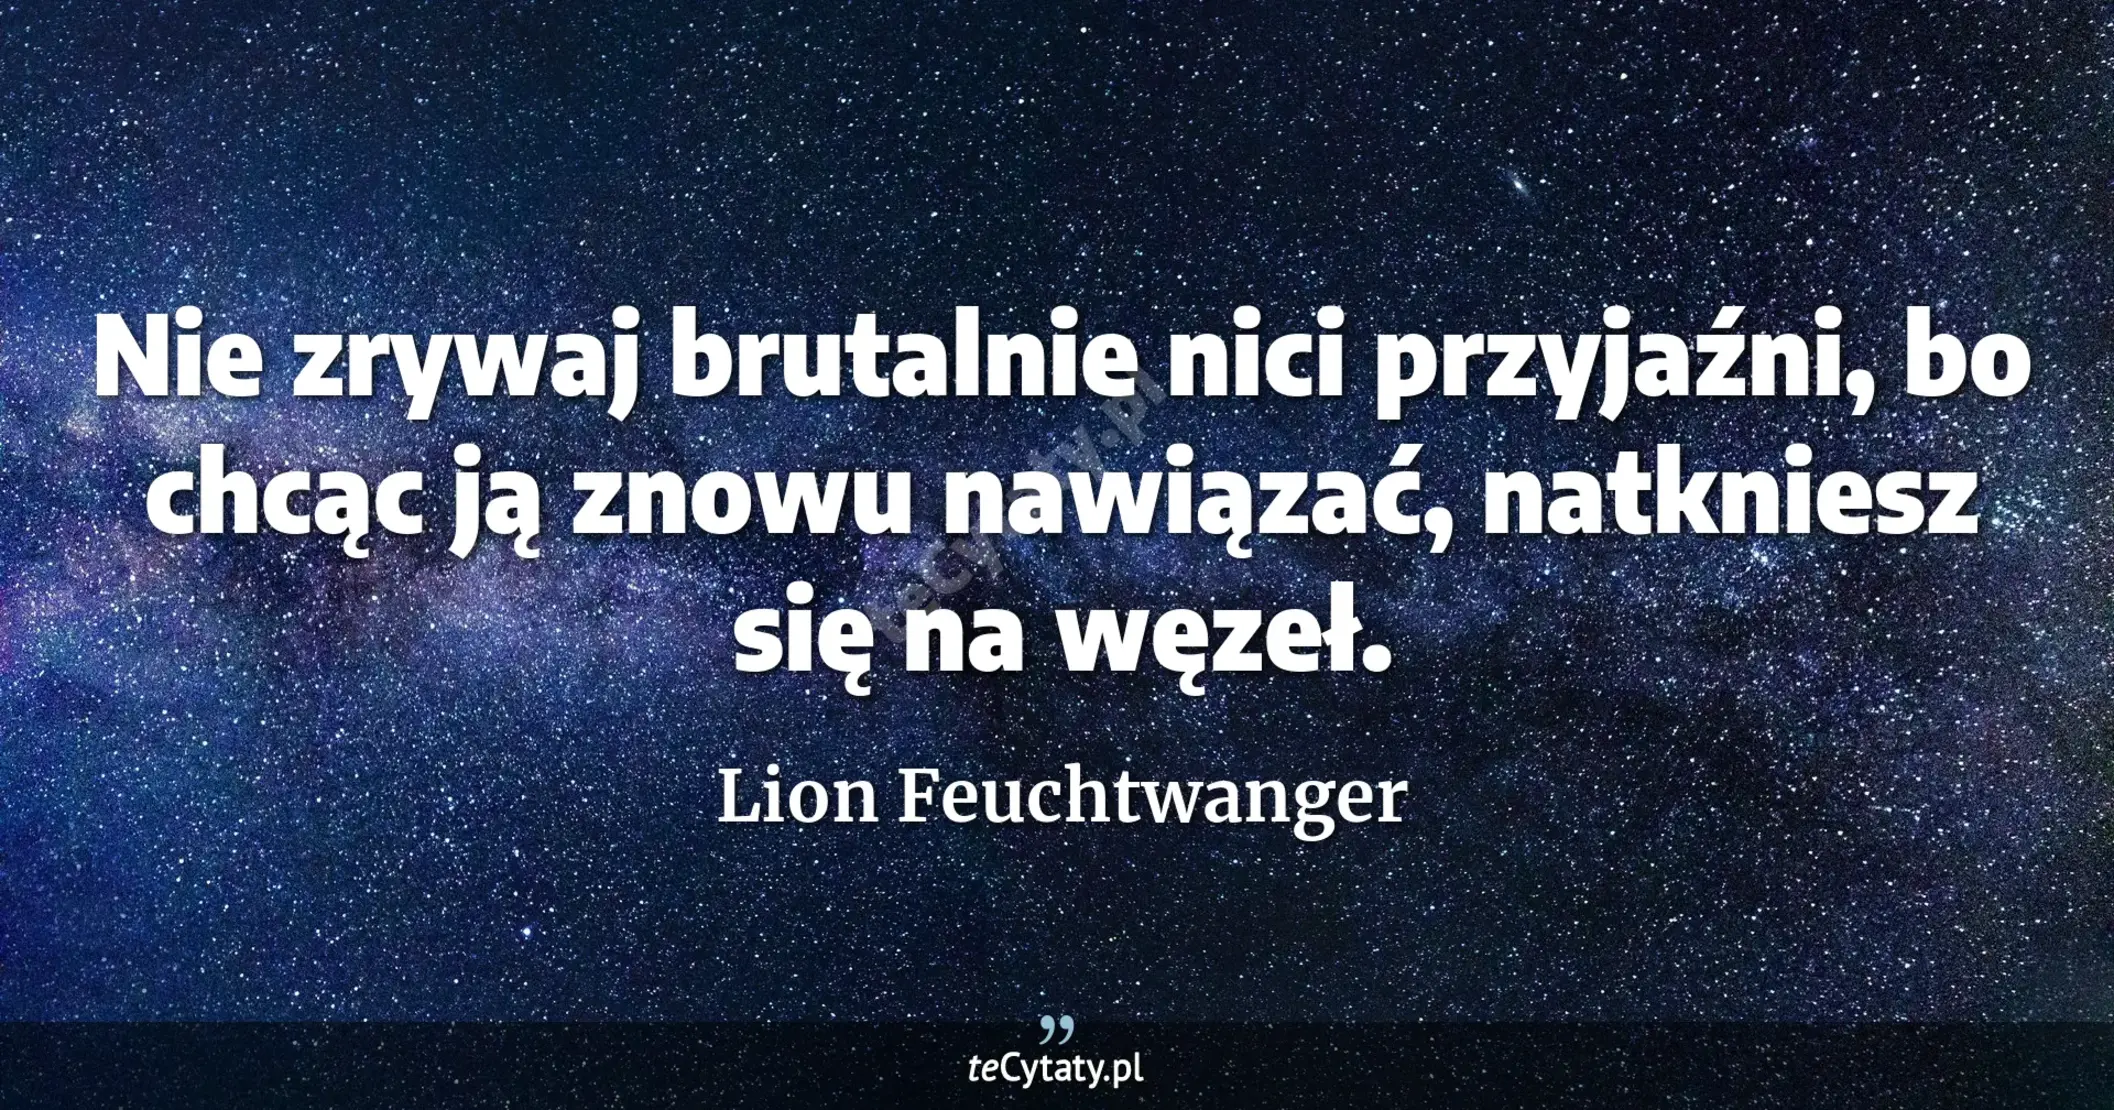 Nie zrywaj brutalnie nici przyjaźni, bo chcąc ją znowu nawiązać, natkniesz się na węzeł. - Lion Feuchtwanger